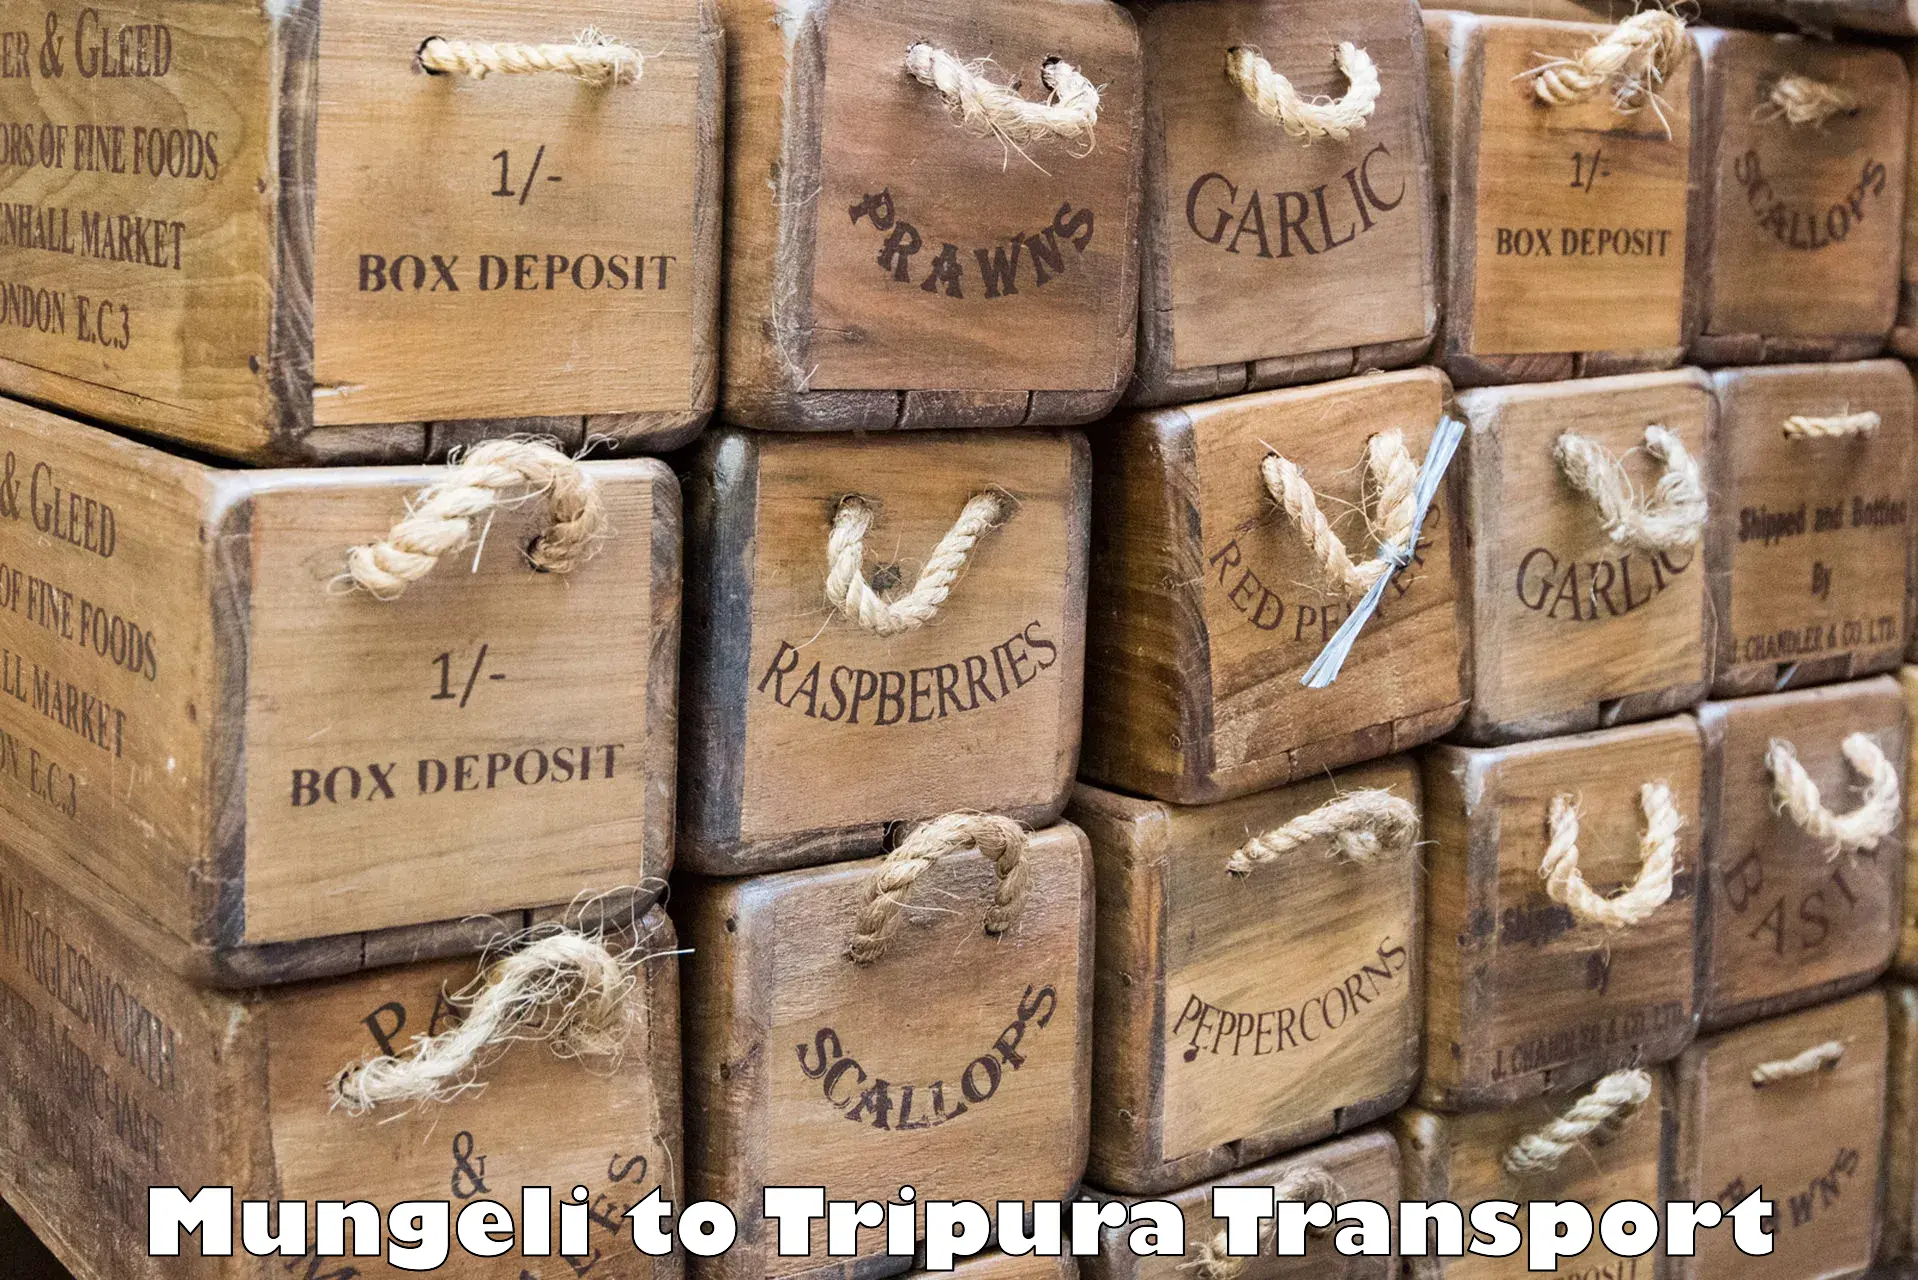 Container transport service Mungeli to Teliamura